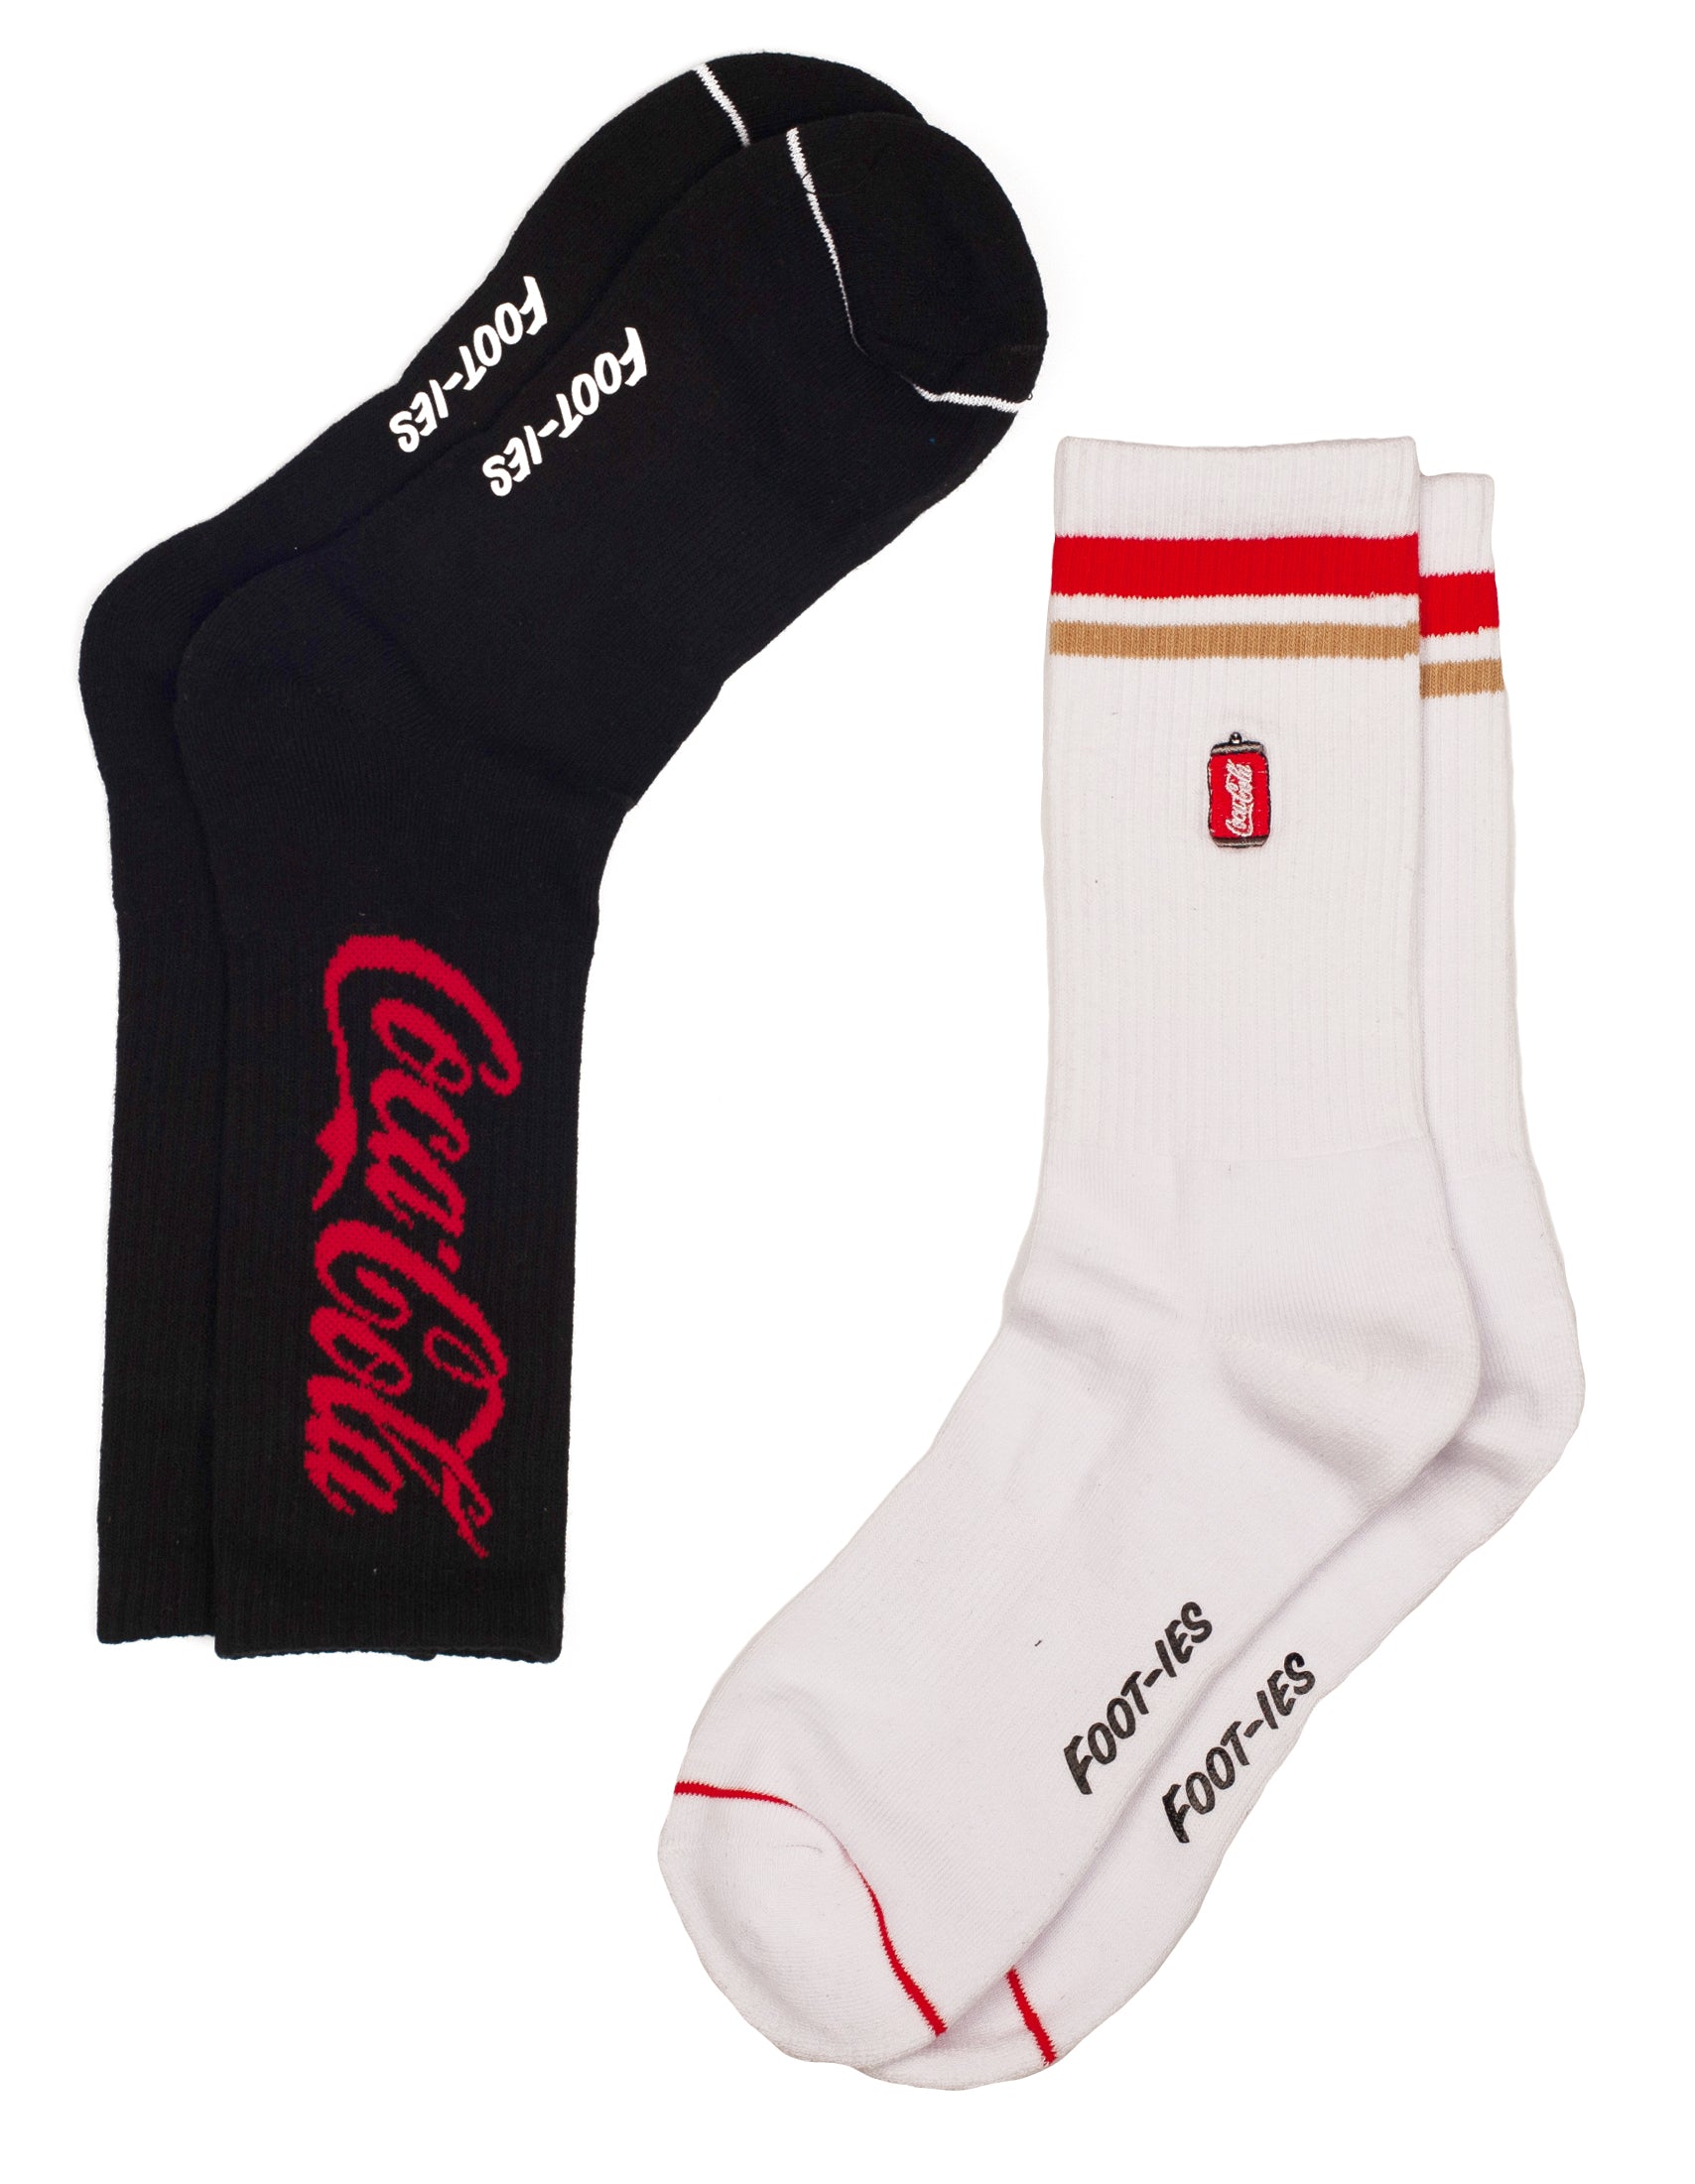 Coca Cola Socks for Men